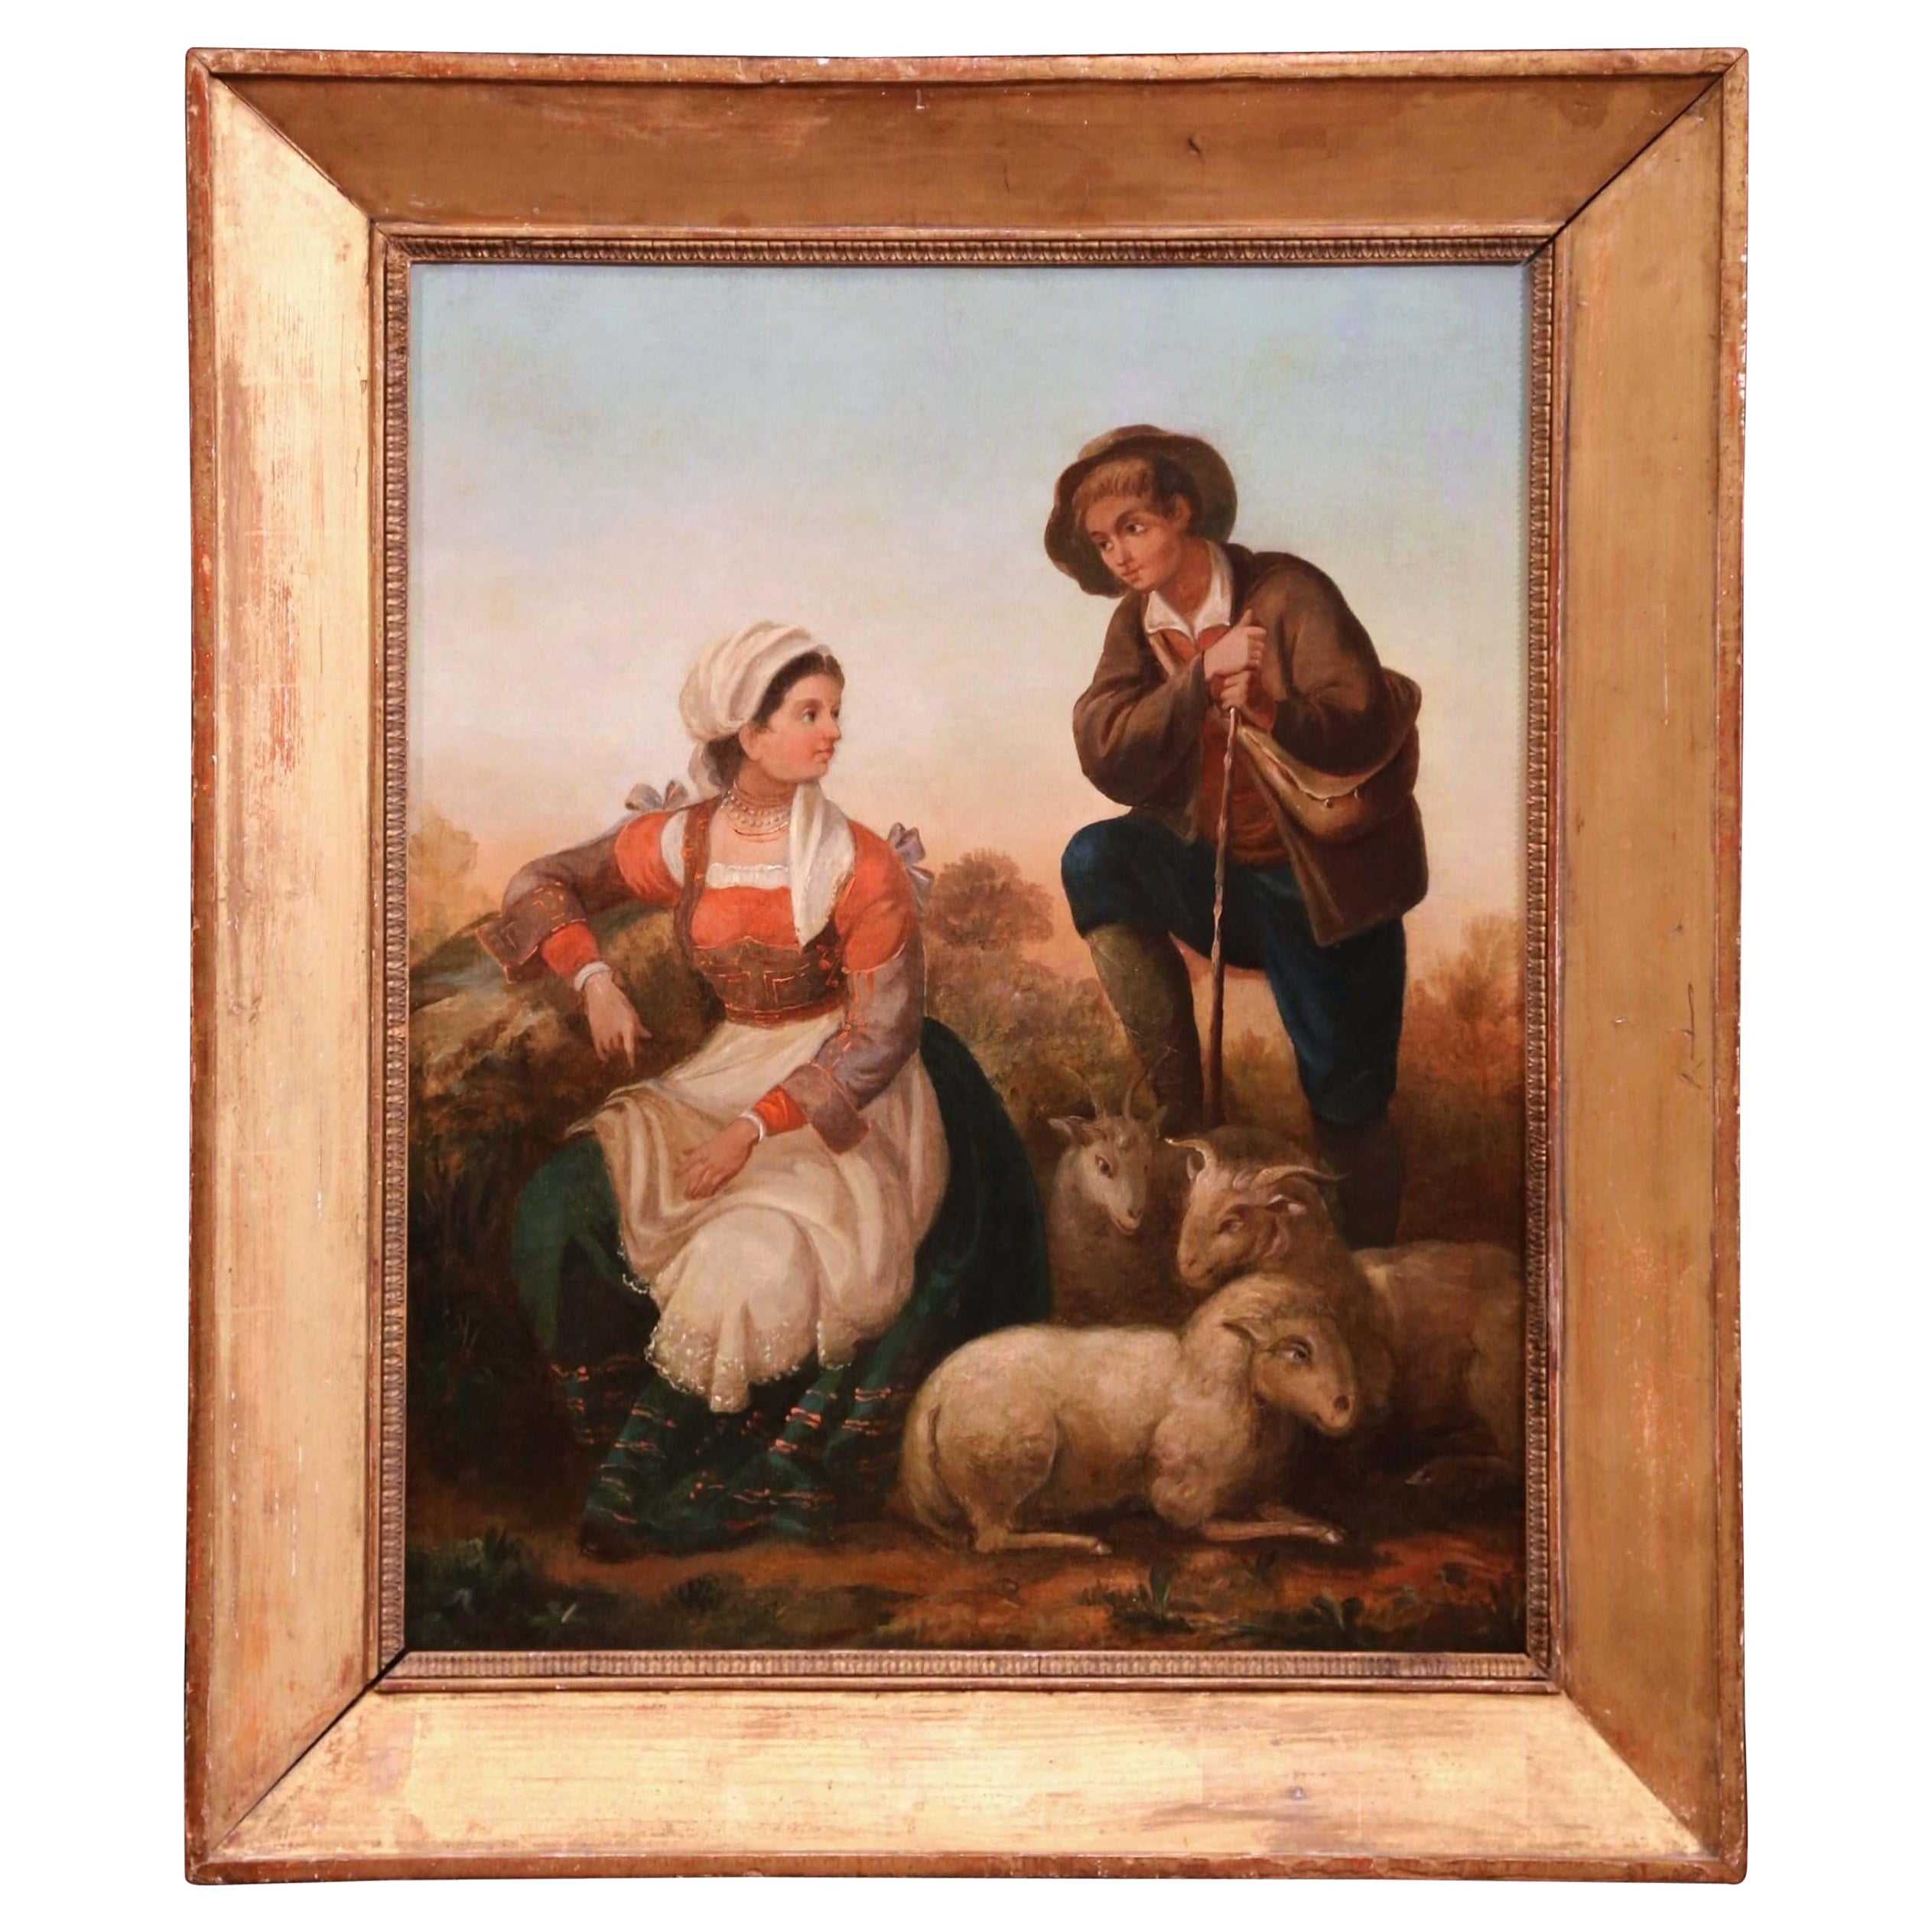 Peinture à l'huile sur toile du 19ème siècle représentant des bergers et des moutons français dans un cadre doré